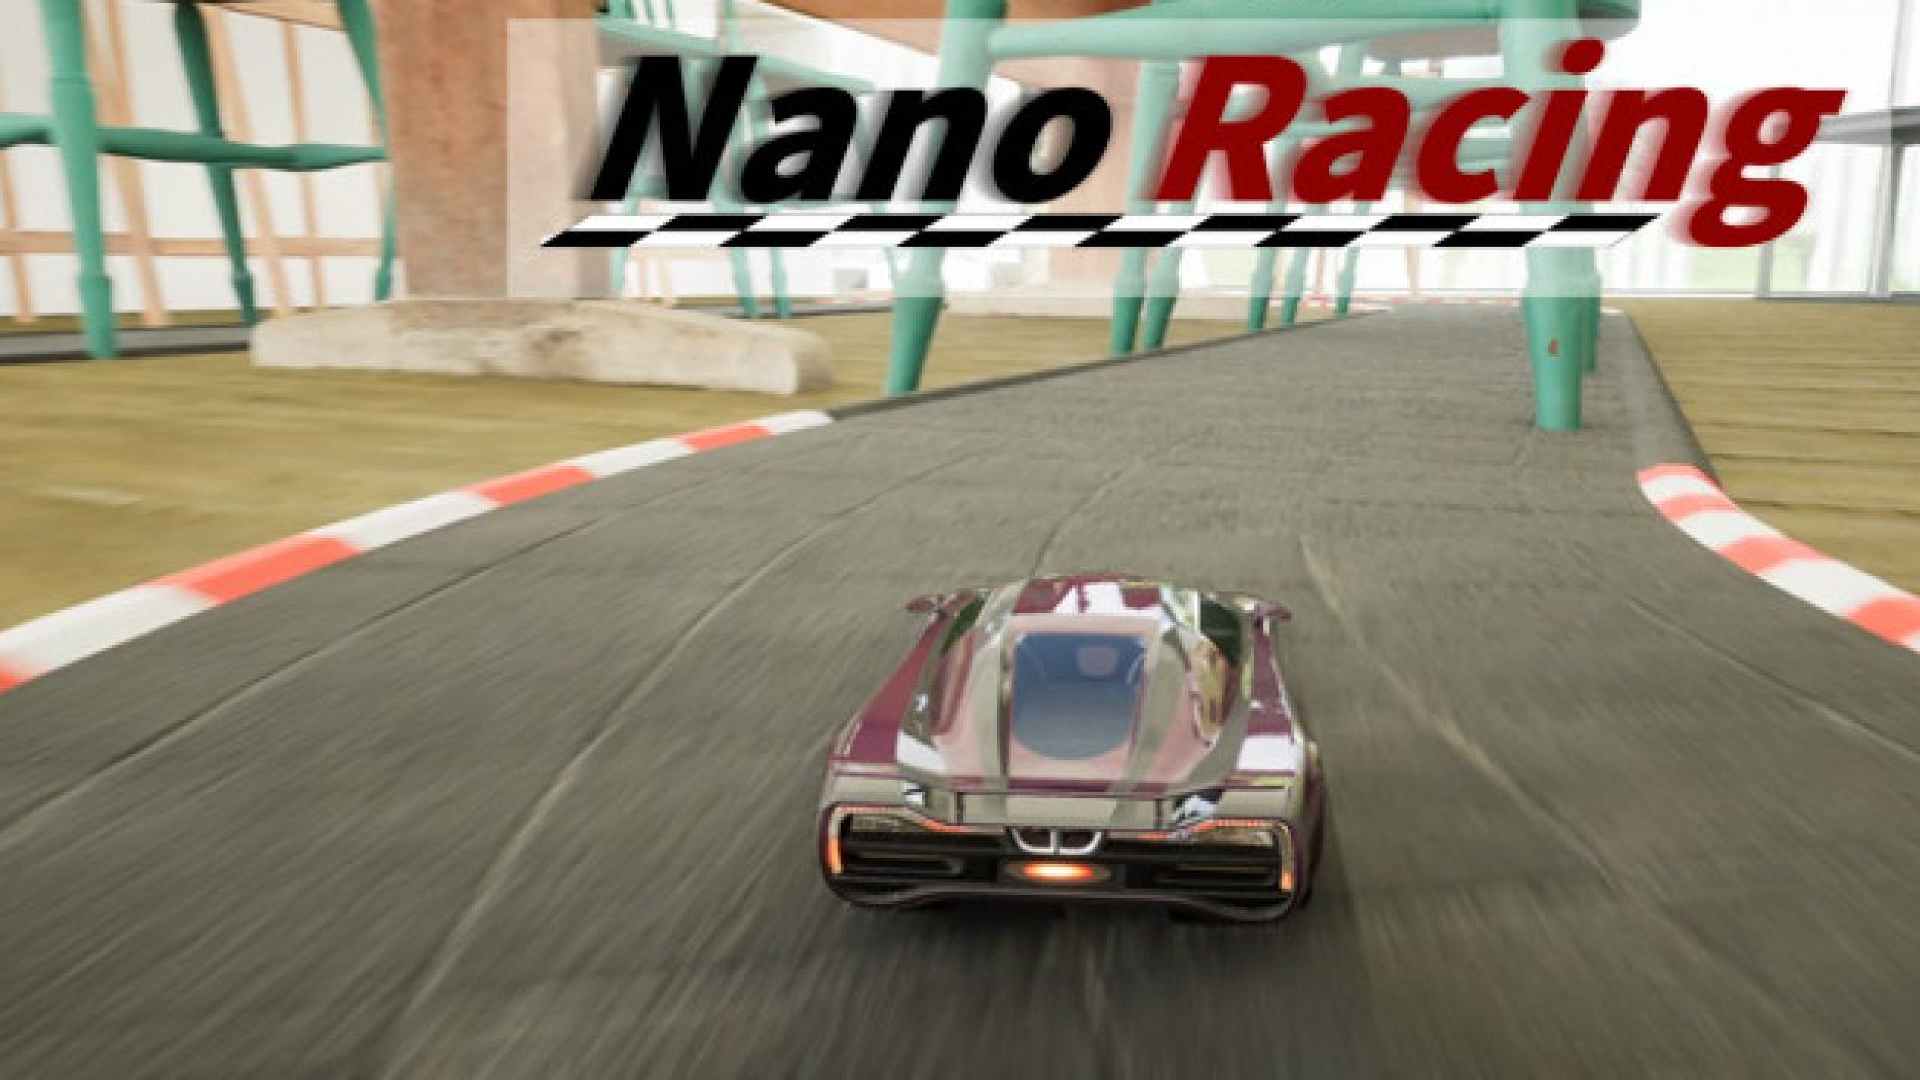 Nano Racing.jpg